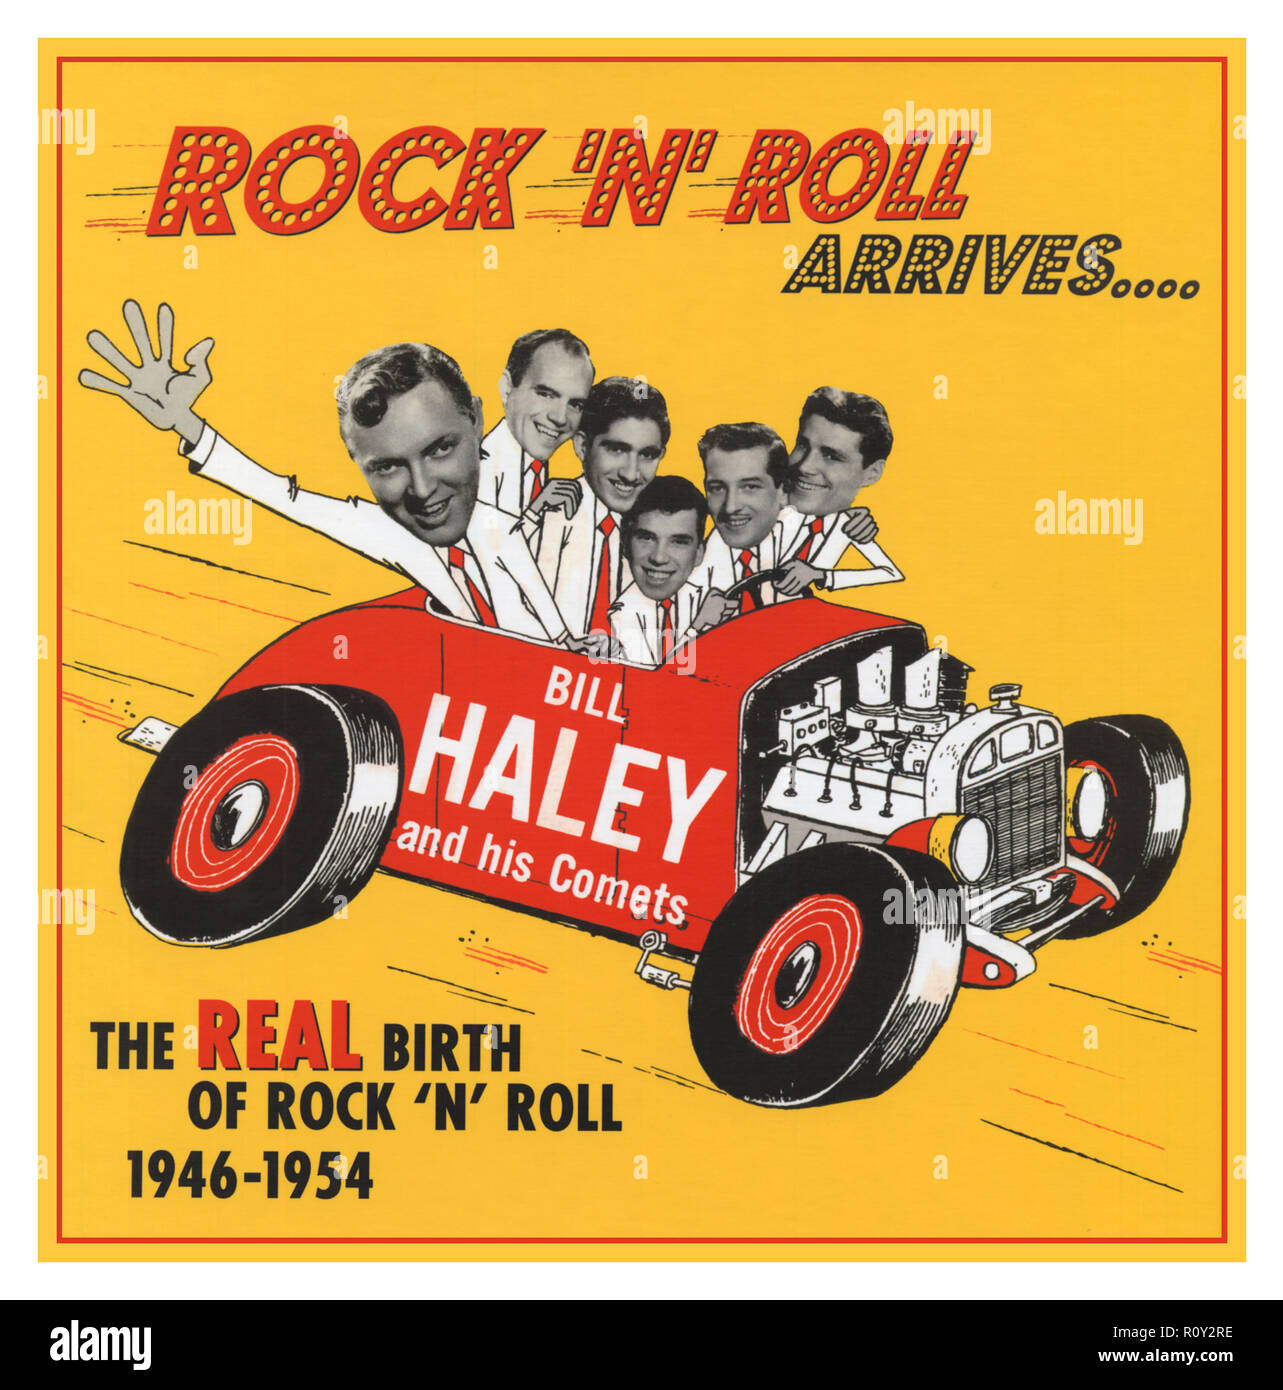 Bill Haley und seinen Comets ‎ - Rock'N'Roll kommt.. Compilation CD von Bill Haley und seinen Comets Rock und Roll Songs von 1946-1954 re-release 2006 werden diese Aufzeichnungen, in denen Rock'n'Roll wirklich begann. Sie Zurückda Rock Rund um die Uhr, und Bill und die Kometen bei der Arbeit auf ihre eigene einzigartige Mischung des Boogie Woogie, Hillbilly, Pop, Blues und Jazz offenbaren, Jahre, bevor jemand anderes. Wir hören ihn erfinden, dem noch unbenannten Musik, Rock'n'Roll, die schließlich die Welt verändert werden. Stockfoto